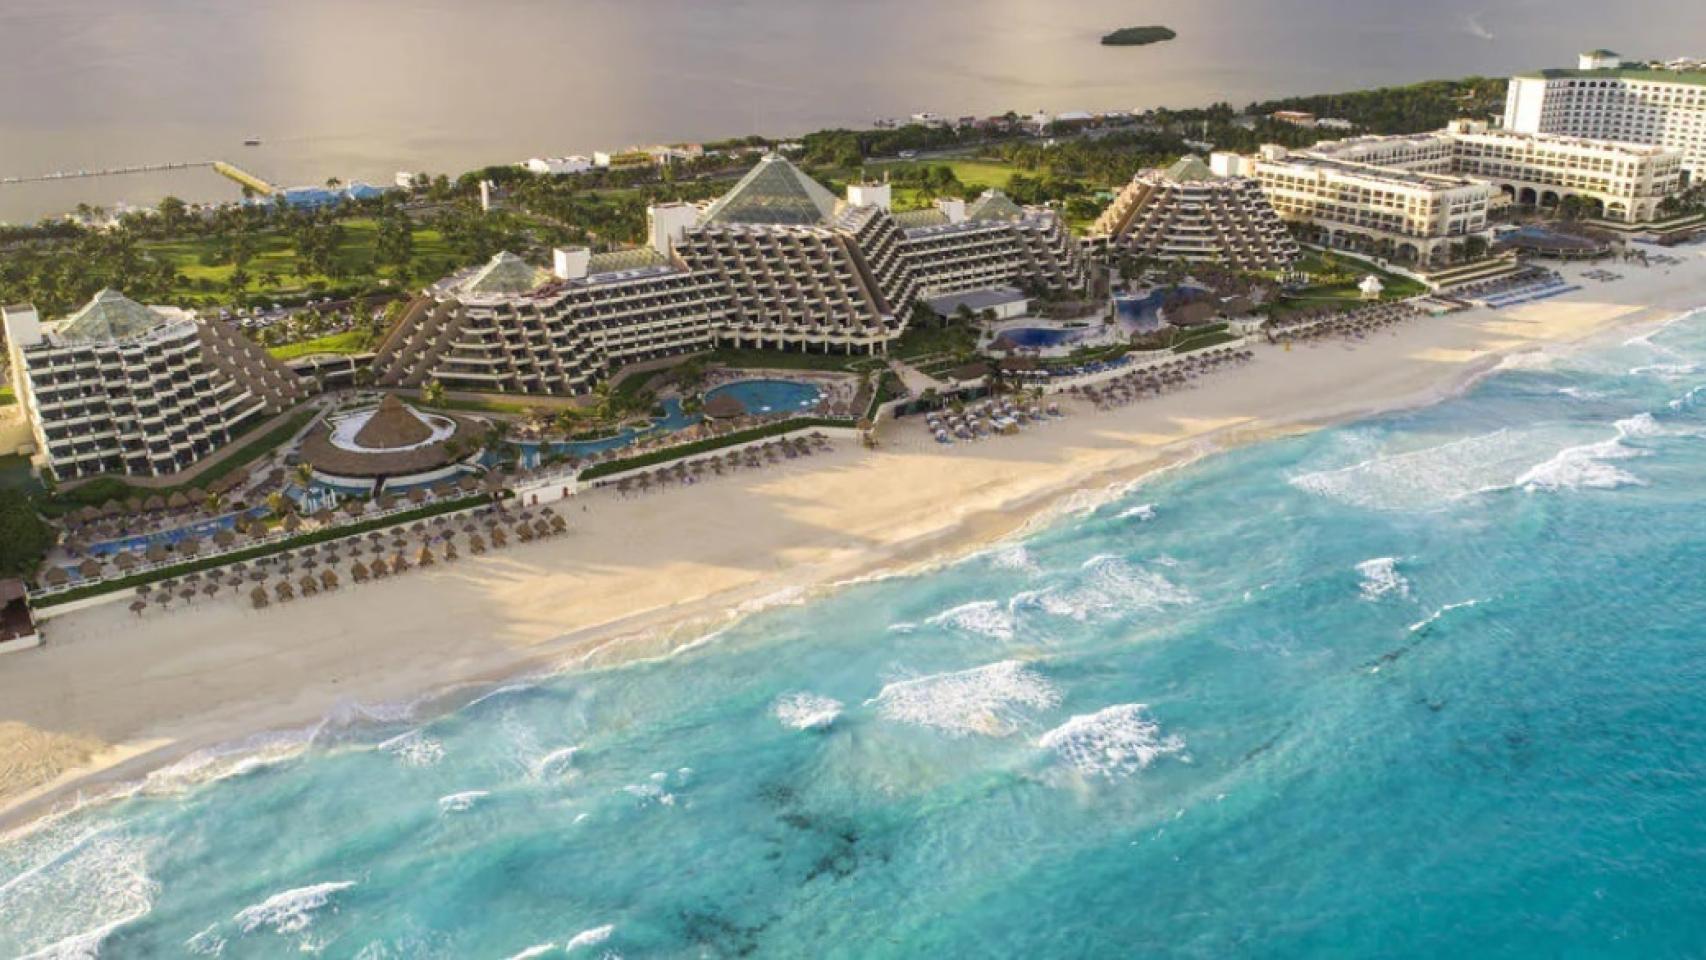 Hotel Paradisus Cancún de Meliá.